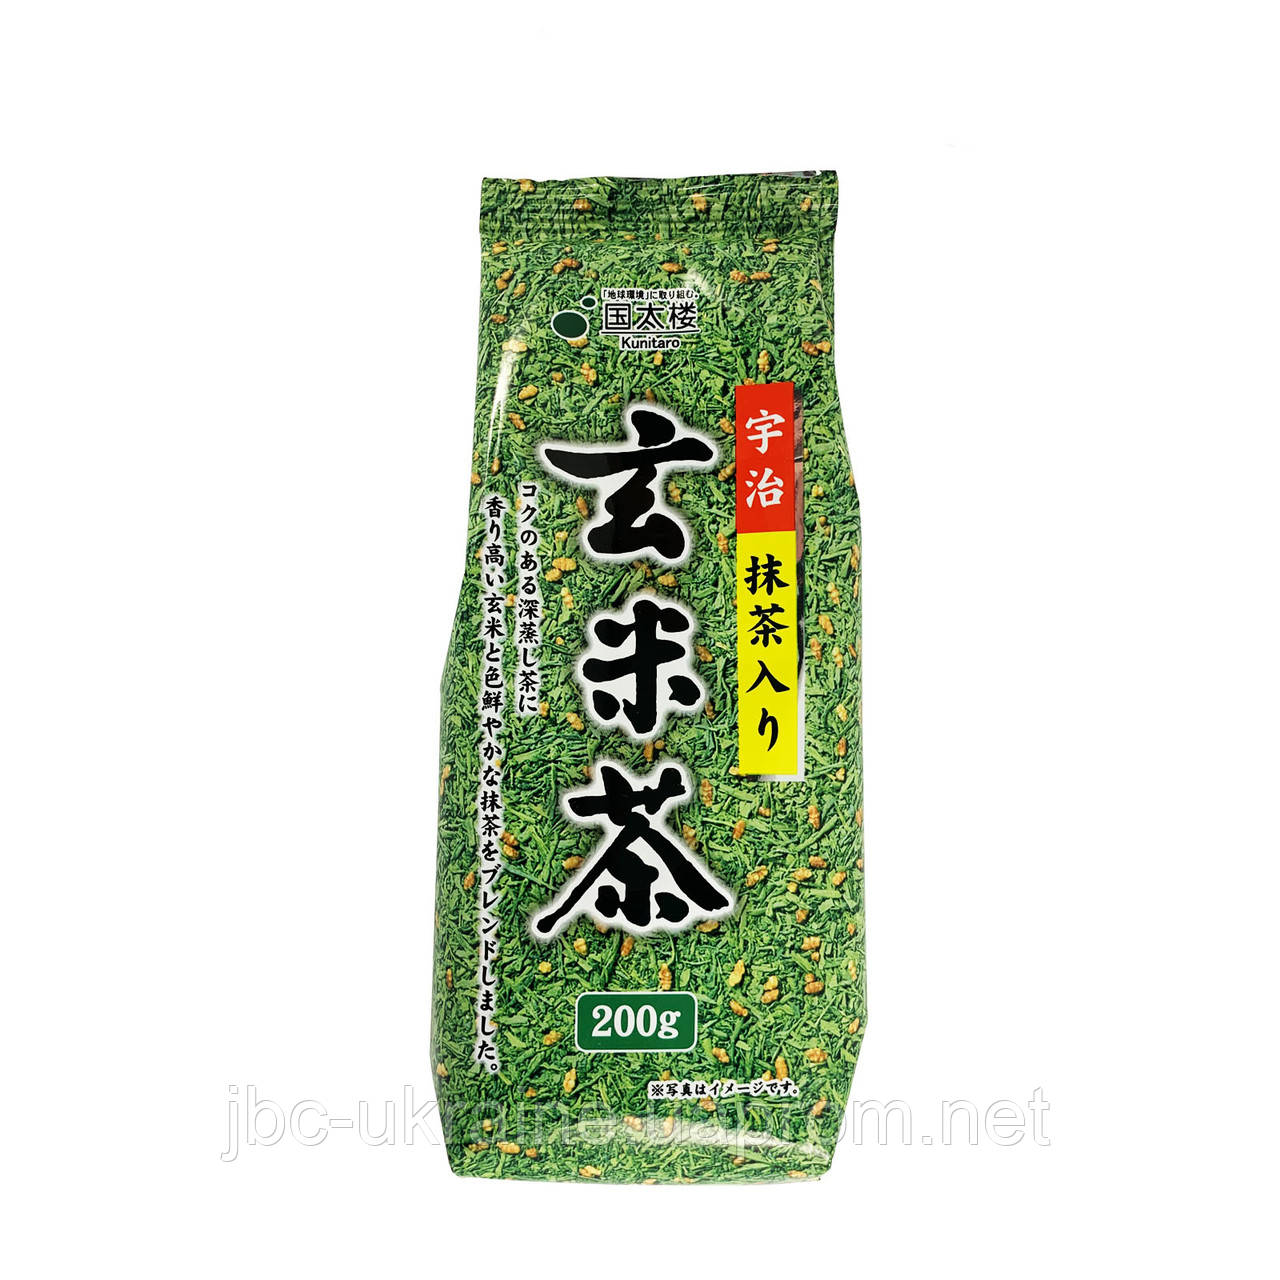 Генмайча - японський зелений чай, 200 р.